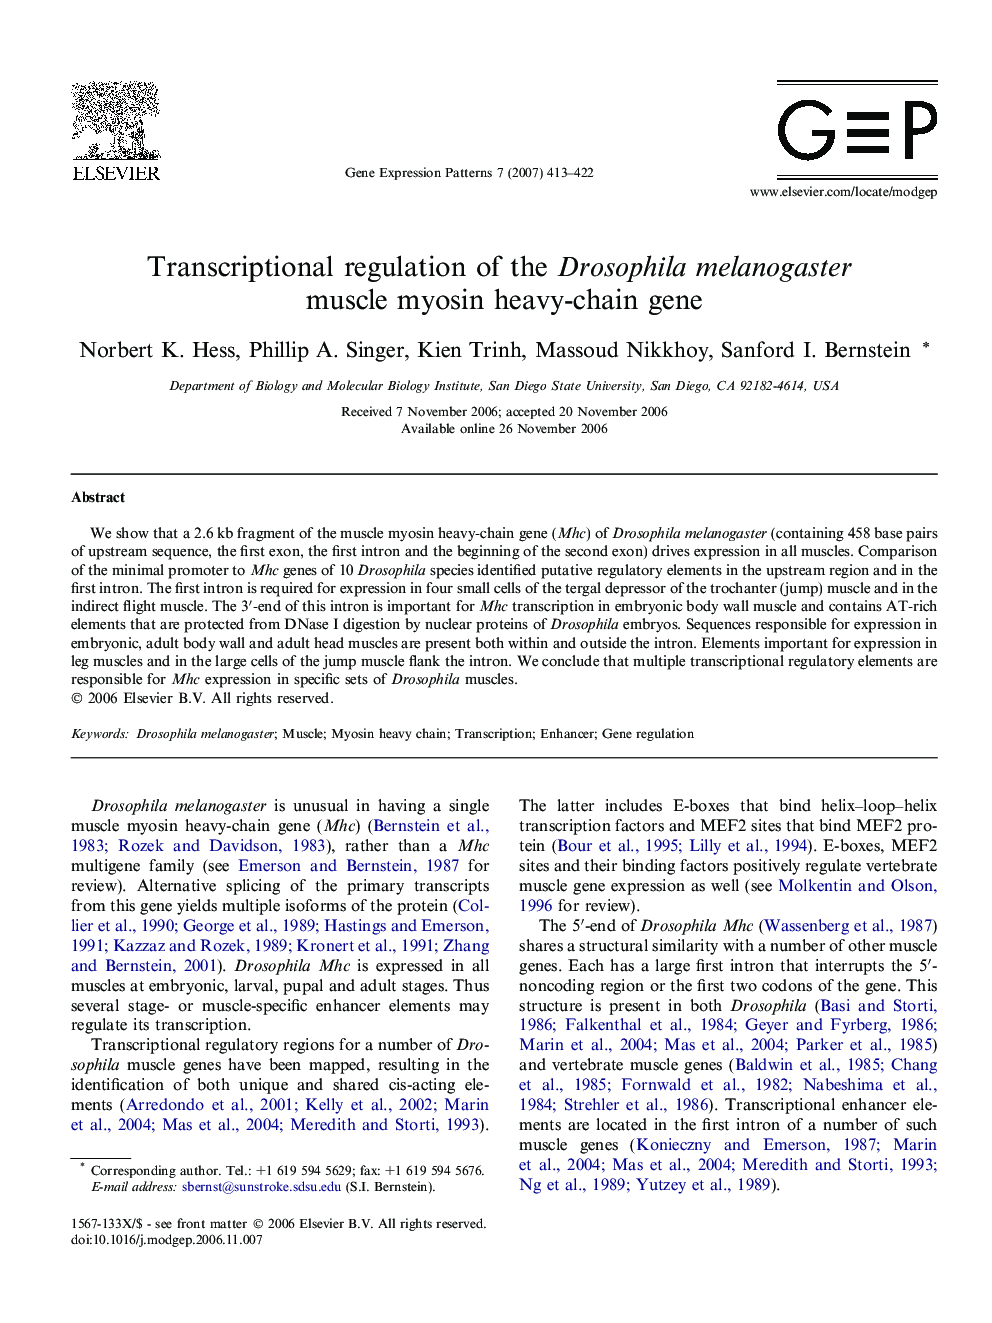 Transcriptional regulation of the Drosophila melanogaster muscle myosin heavy-chain gene